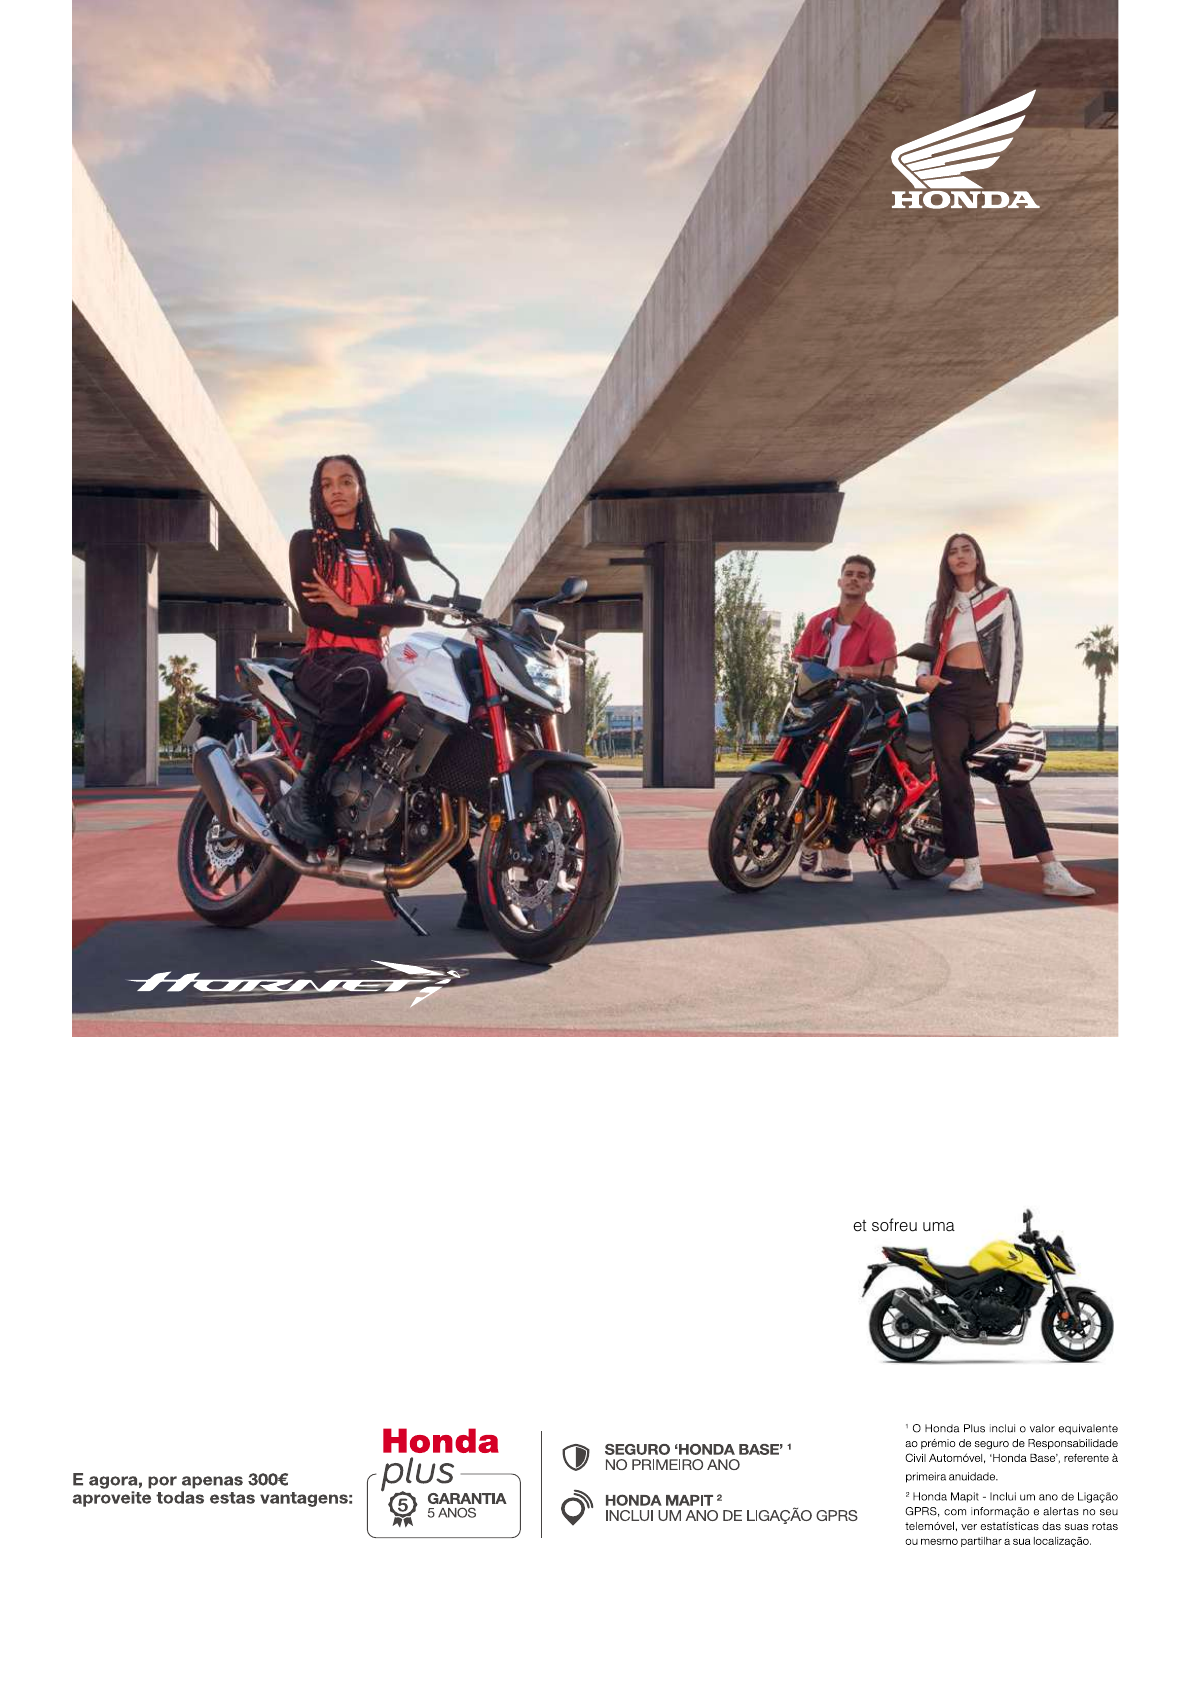 Coleção gratuita de motos para pintar - MotoNews - Andar de Moto